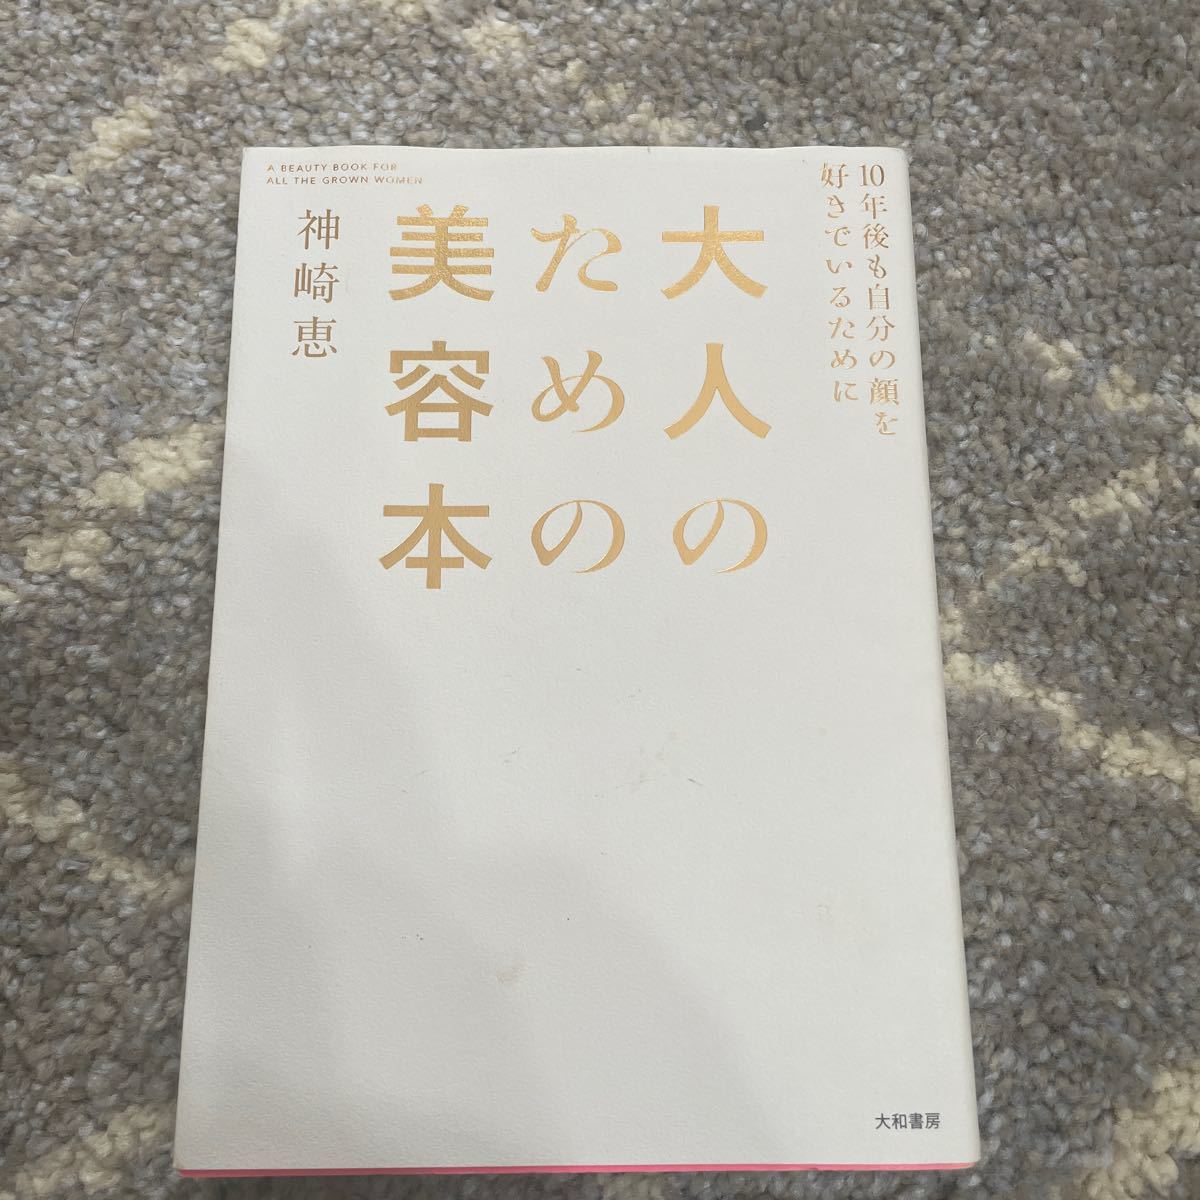 図説》 真田幸村がよくわかる本 「大人のための歴史」 研究会｜PayPay 